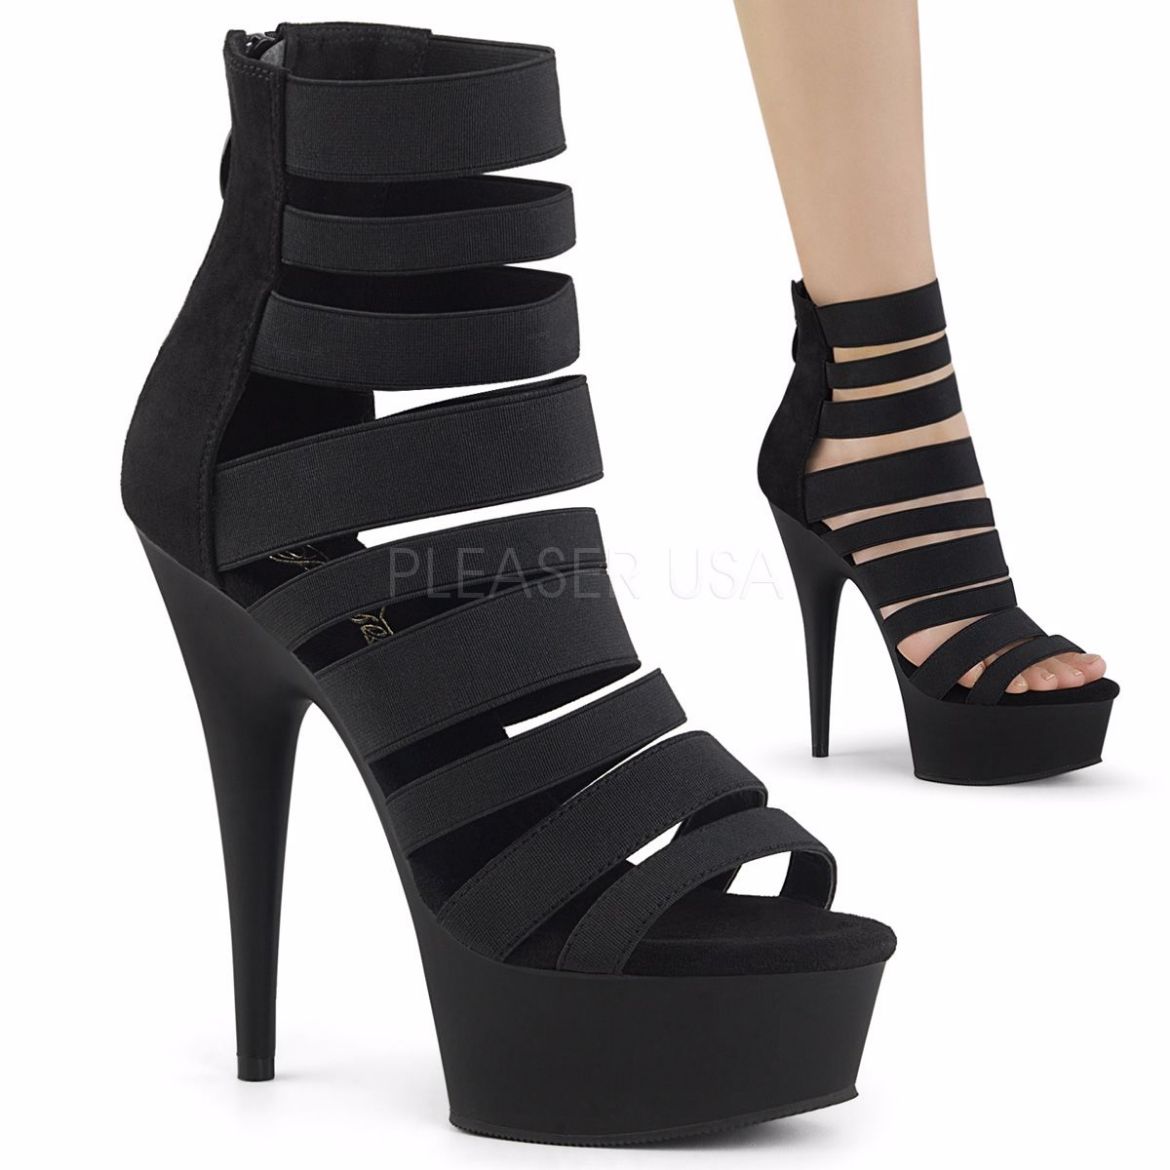 Product image of Pleaser Delight-600-17 Black Elastic Band/Black Matte, 6 inch (15.2 cm) Heel, 1 3/4 inch (4.4 cm) Platform Sandal Shoes